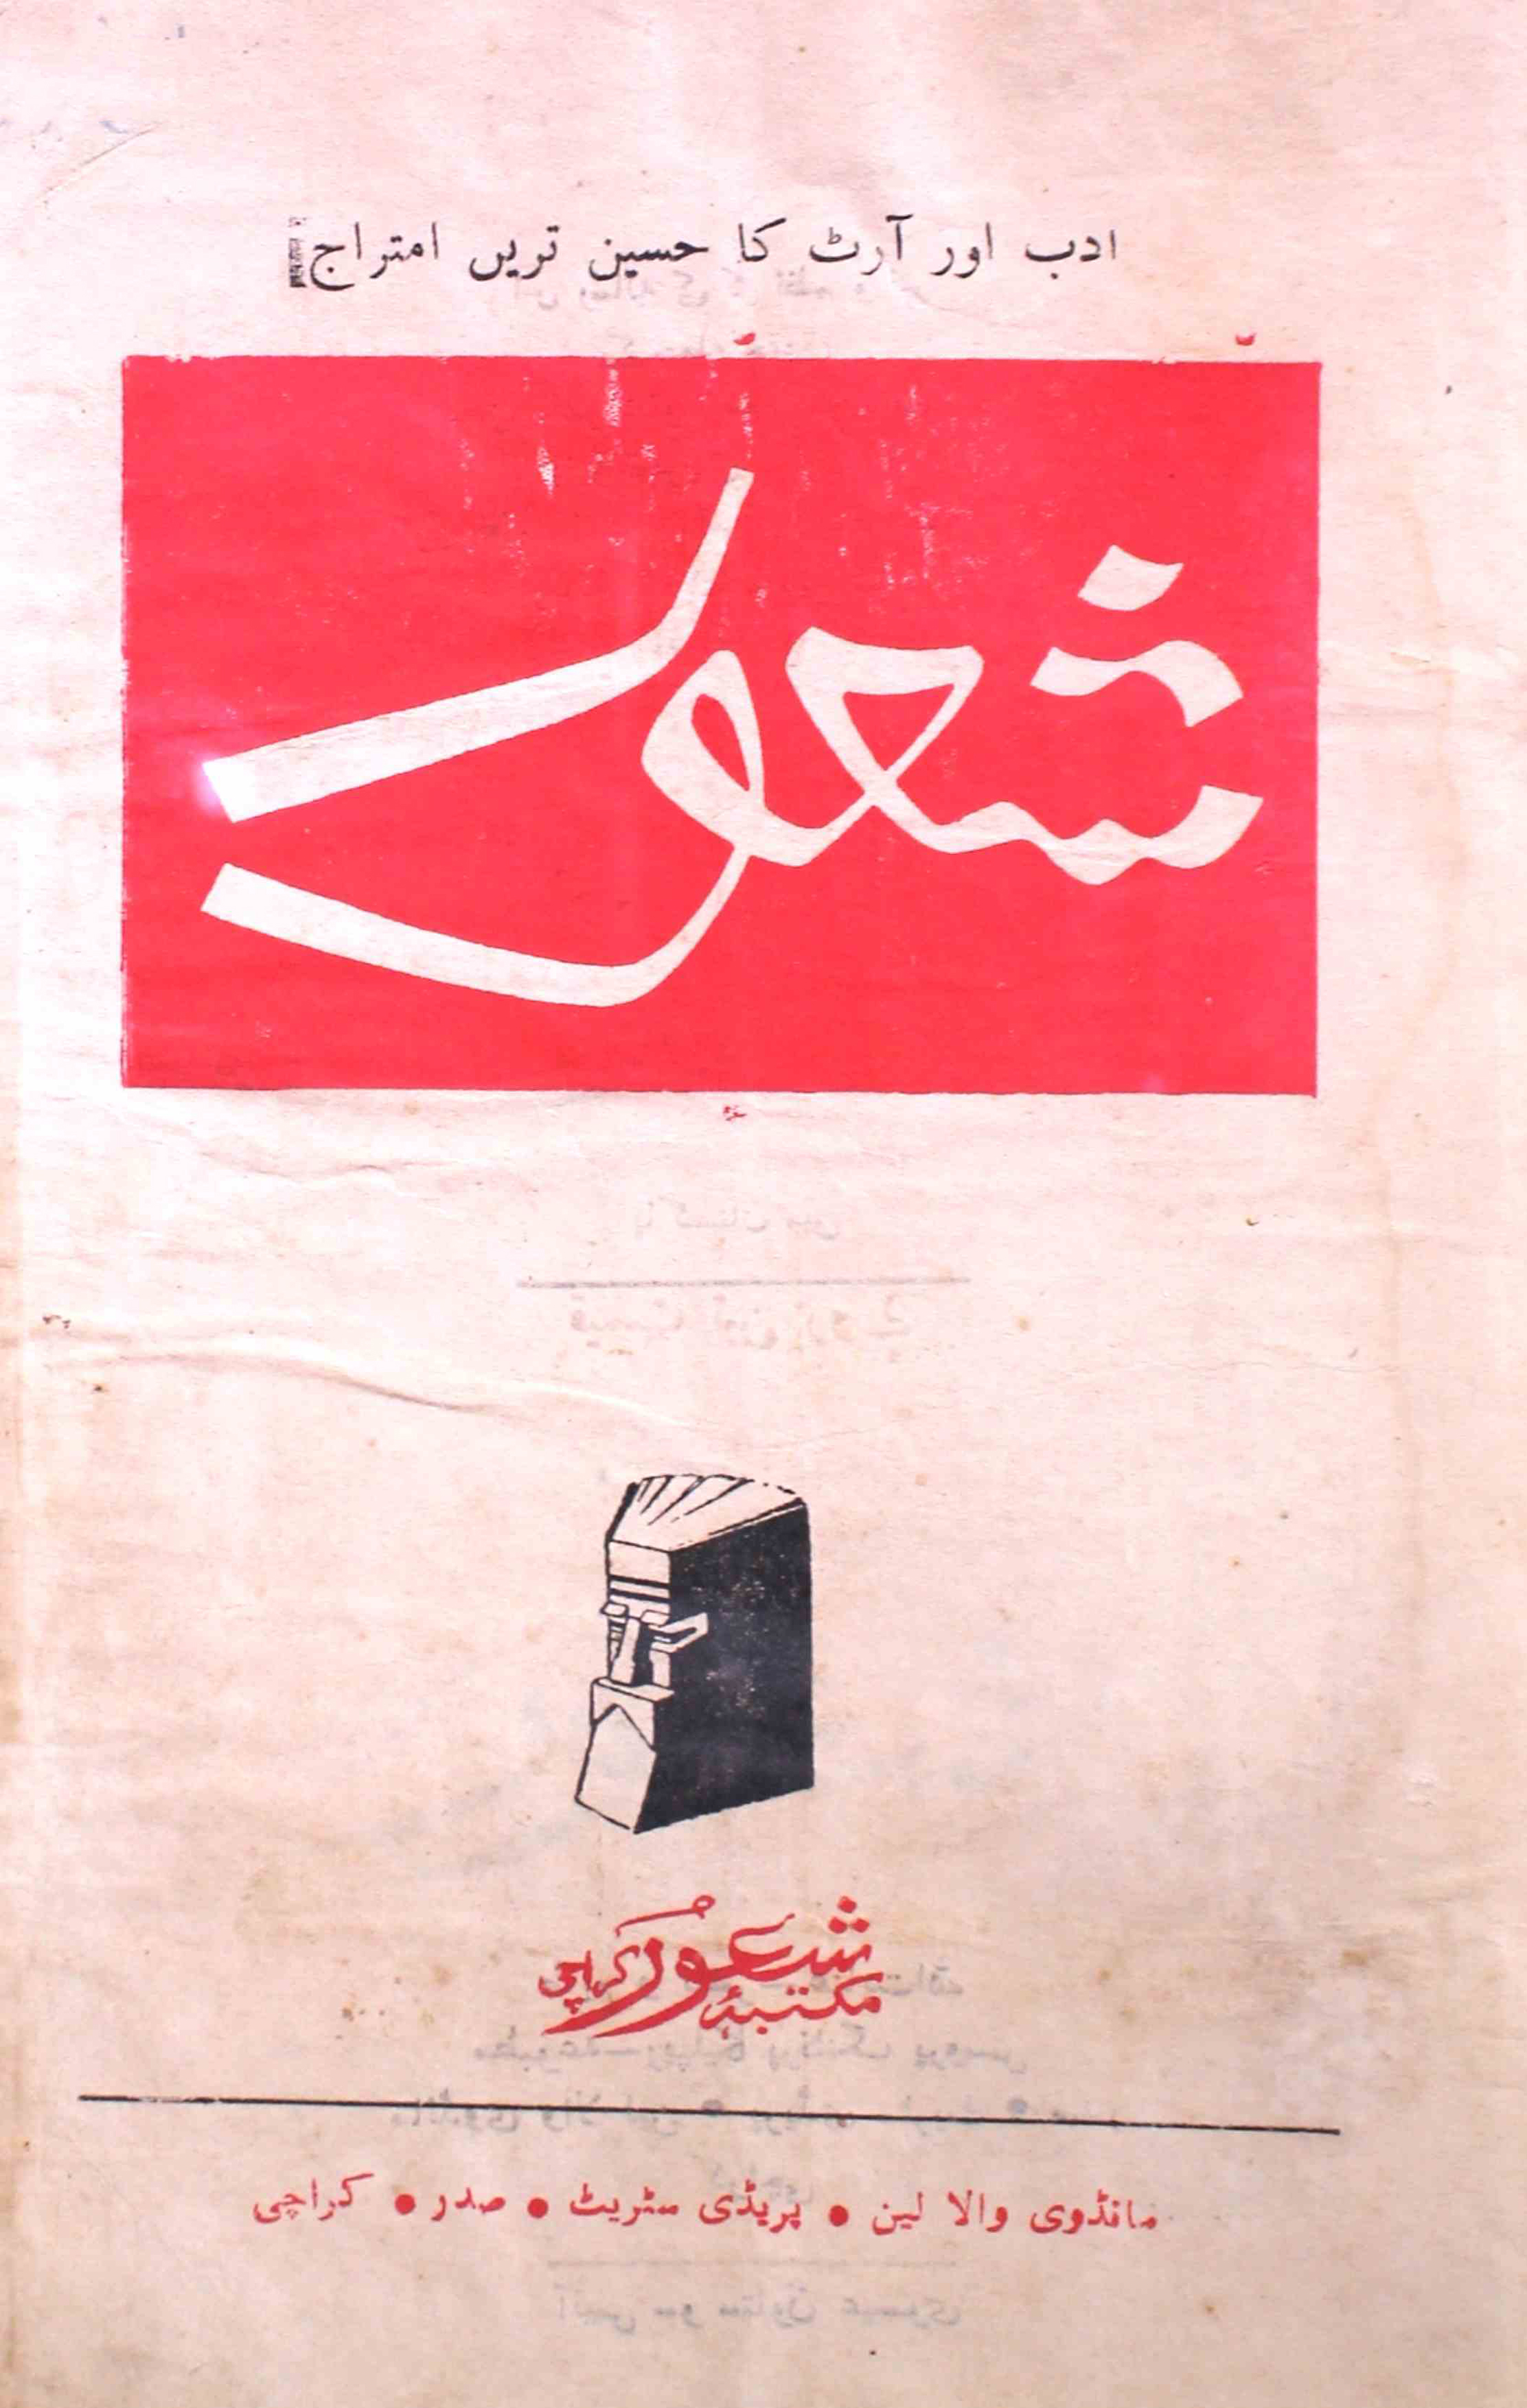 shuoor-shumaara-number-000-s-e-husaini-magazines-1